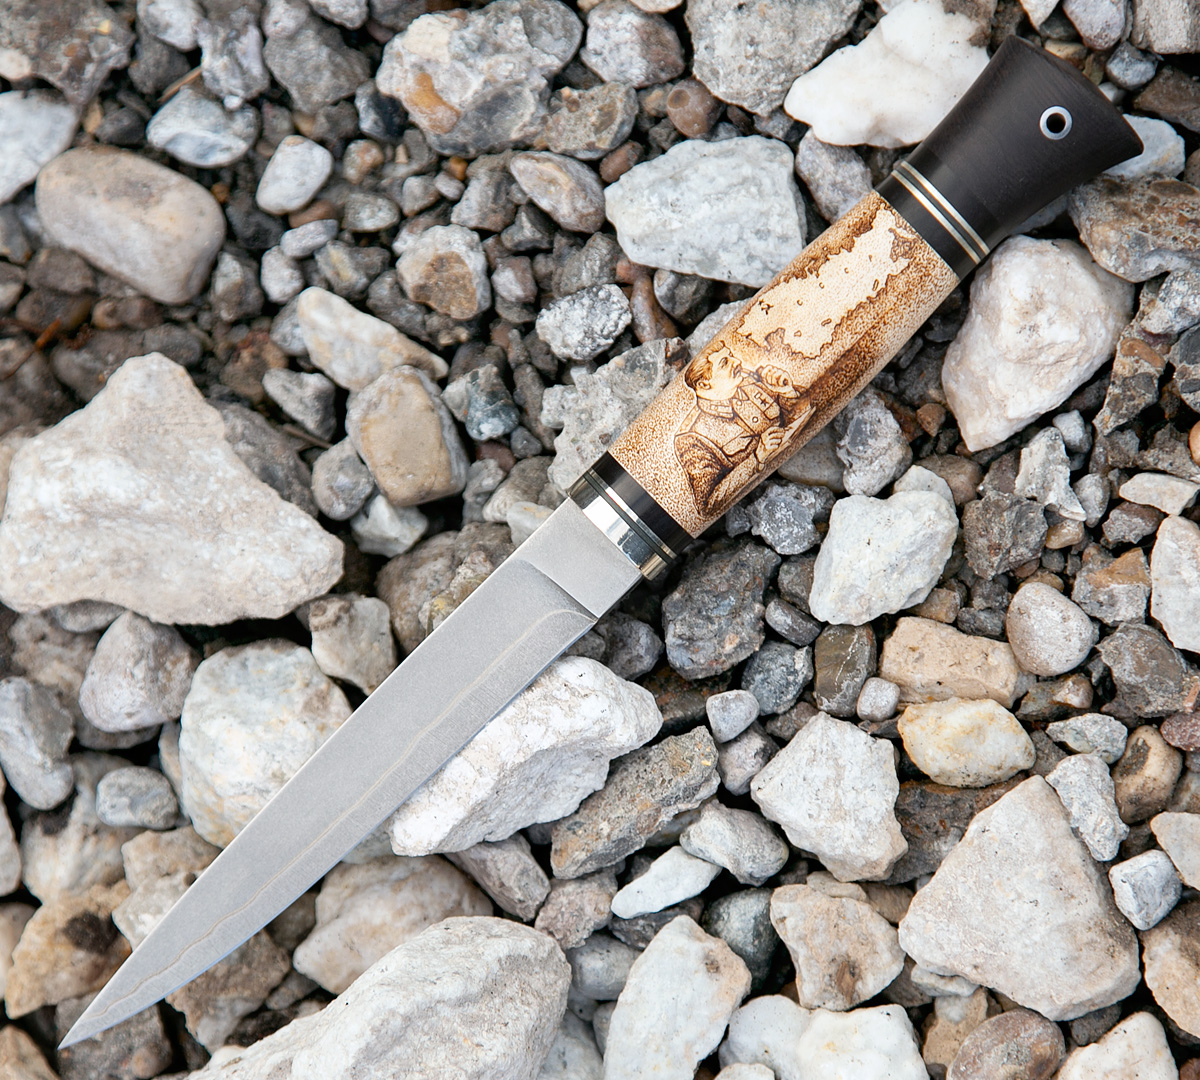 Нож Финка из стали S390 в нержавеющих обкладках